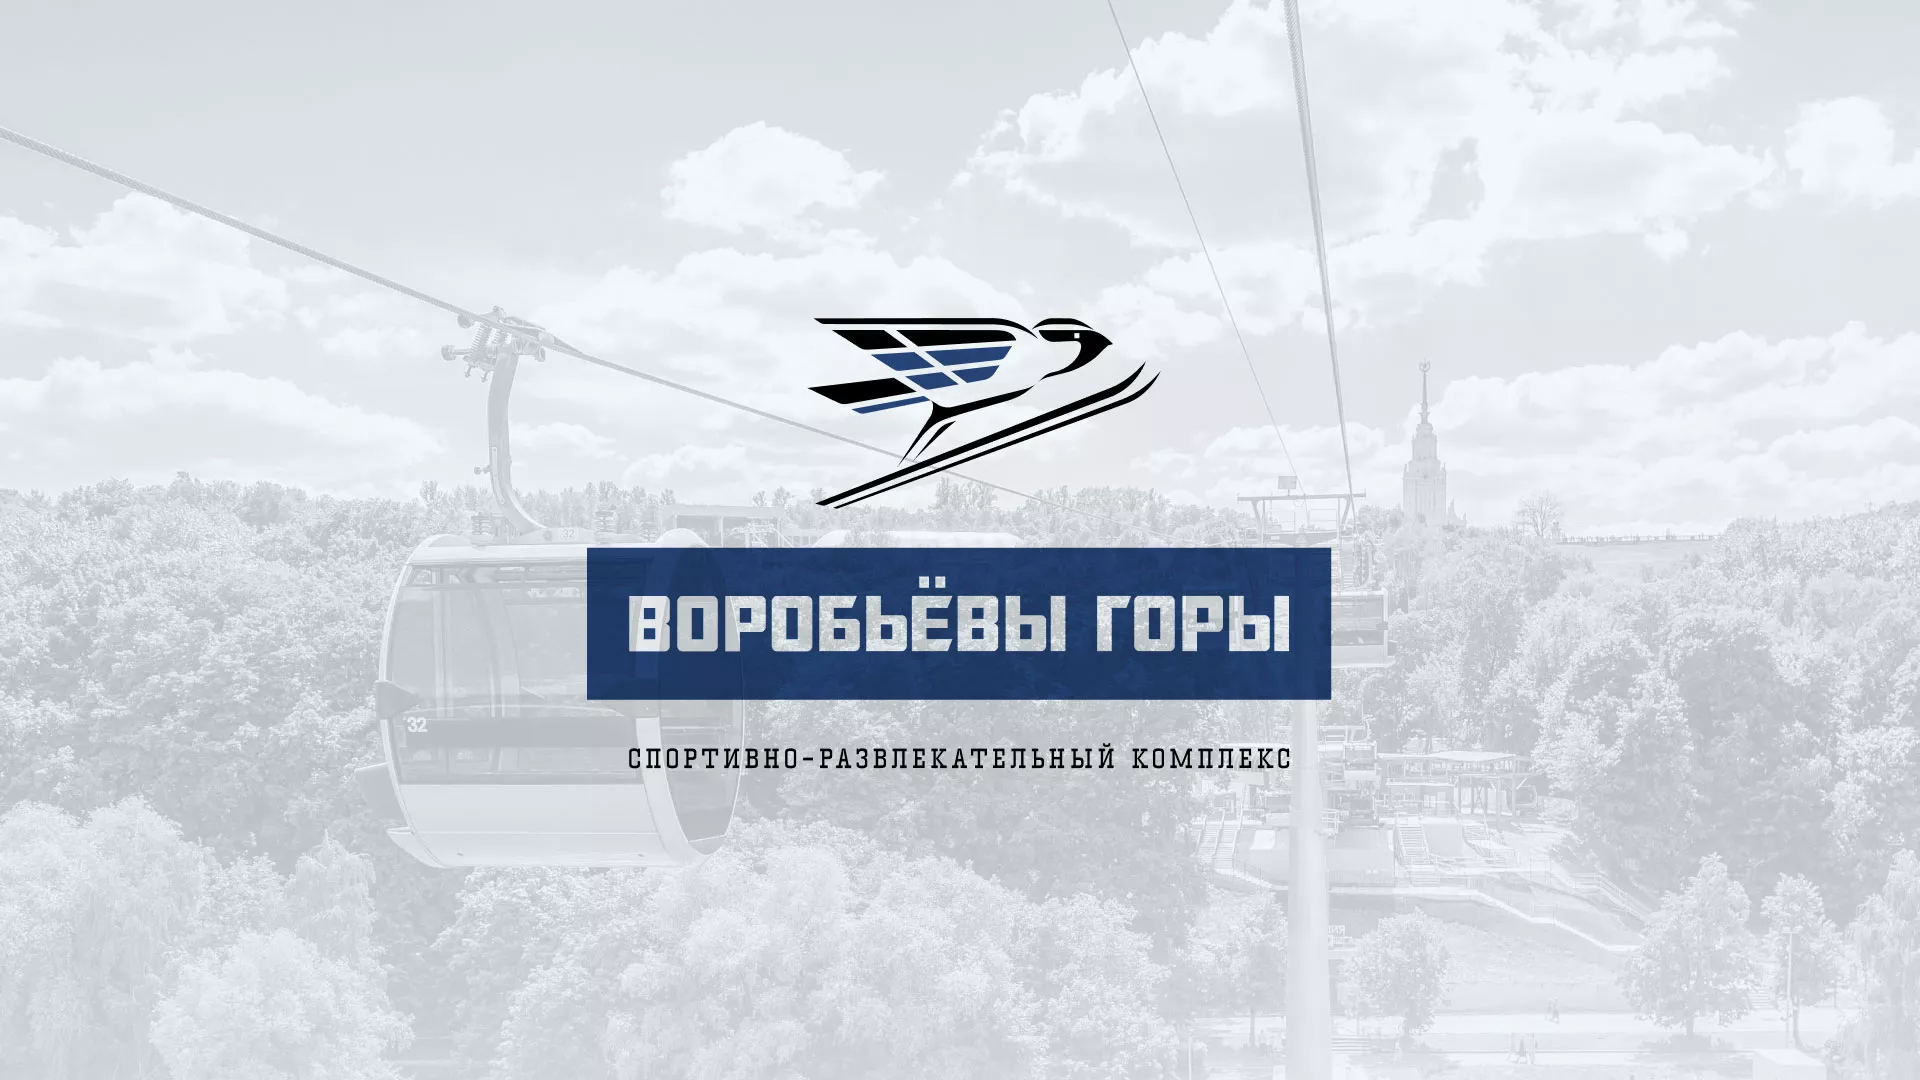 Разработка сайта в Серафимовиче для спортивно-развлекательного комплекса «Воробьёвы горы»